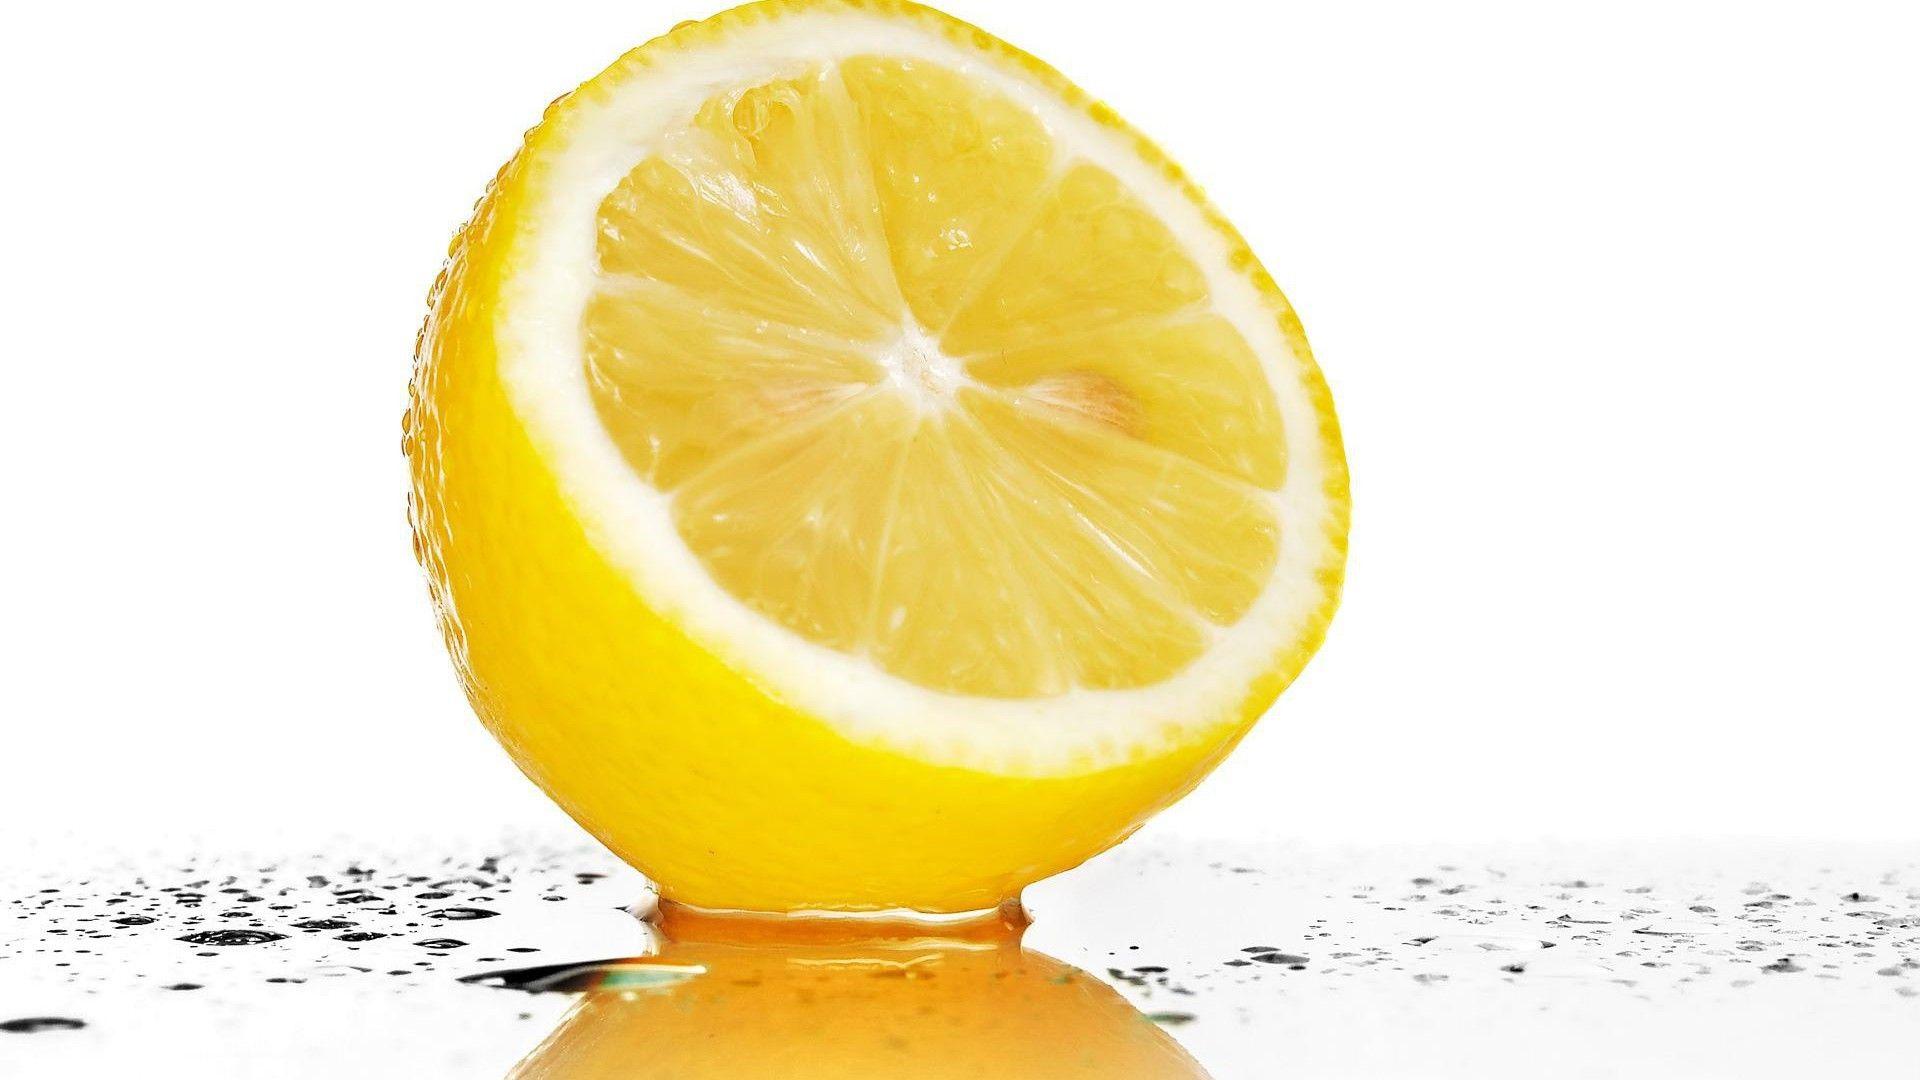 Fruits water drops lemons wallpaperx1080